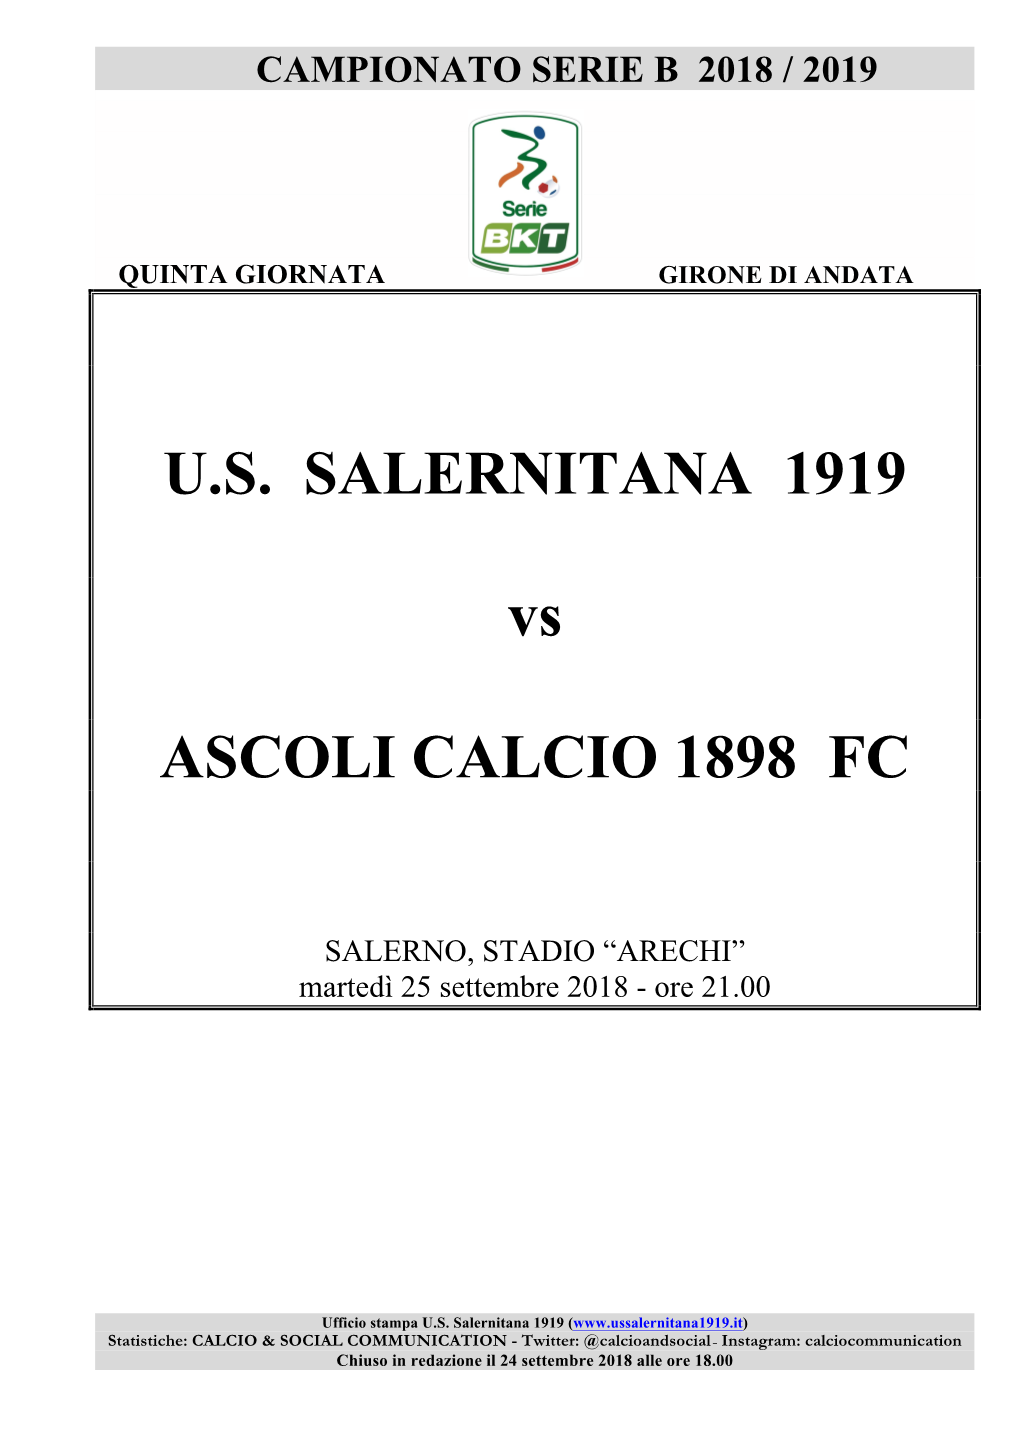 U.S. SALERNITANA 1919 Vs ASCOLI CALCIO 1898 FC